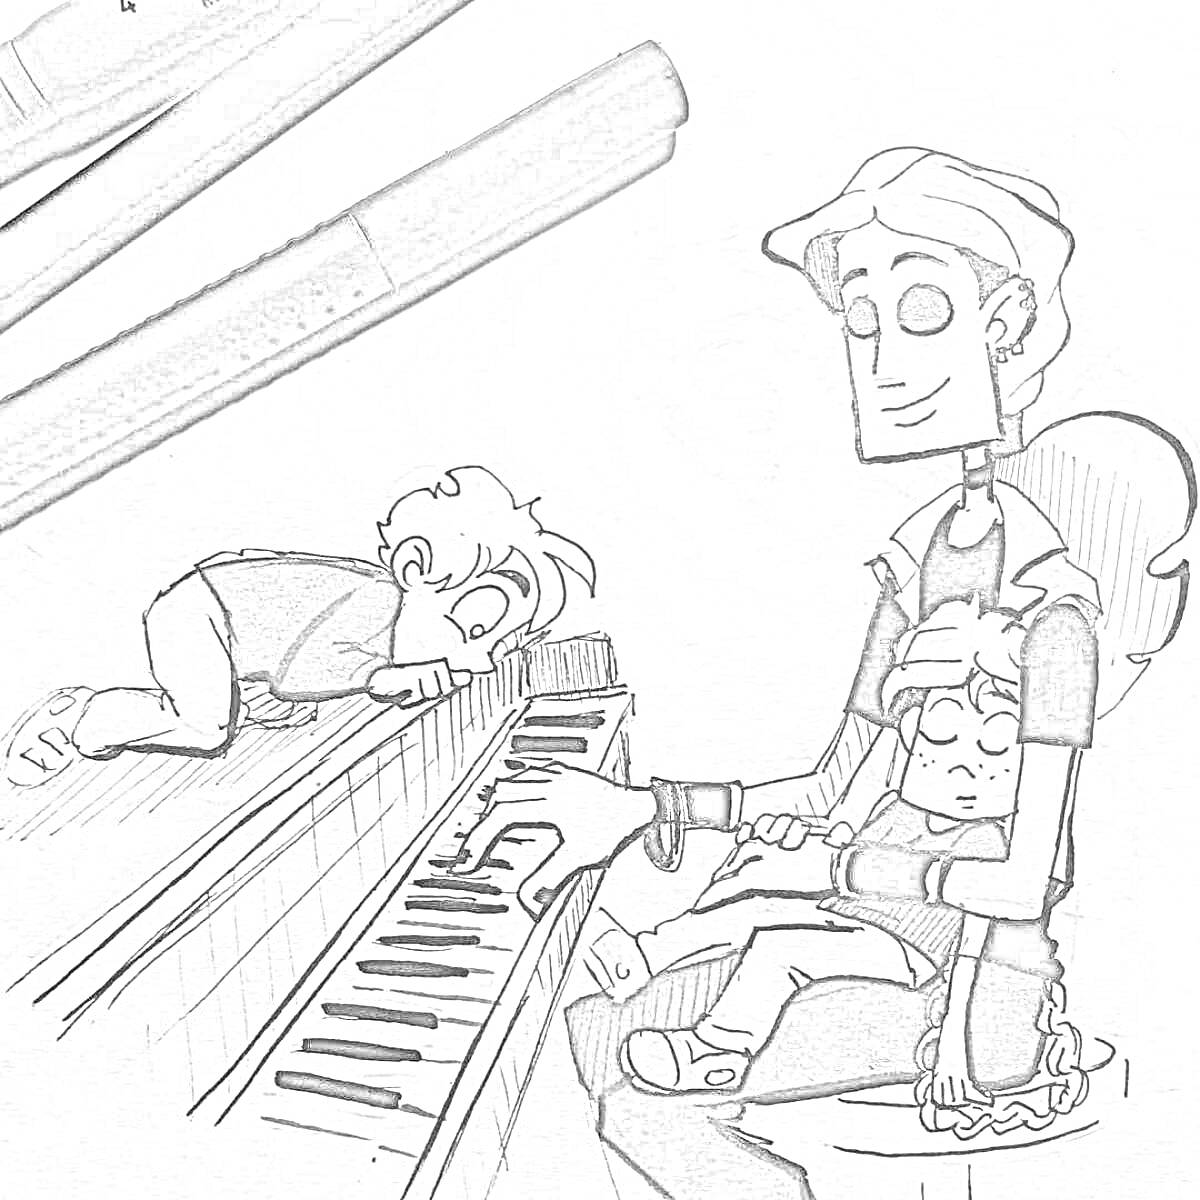 Раскраска Раскраска с тремя персонажами из «Метал Фэмили», один из которых сидит на табурете, играет на пианино и держит одного из детей на коленях, второй ребенок лежит на пианино. На заднем плане лежат два маркера.